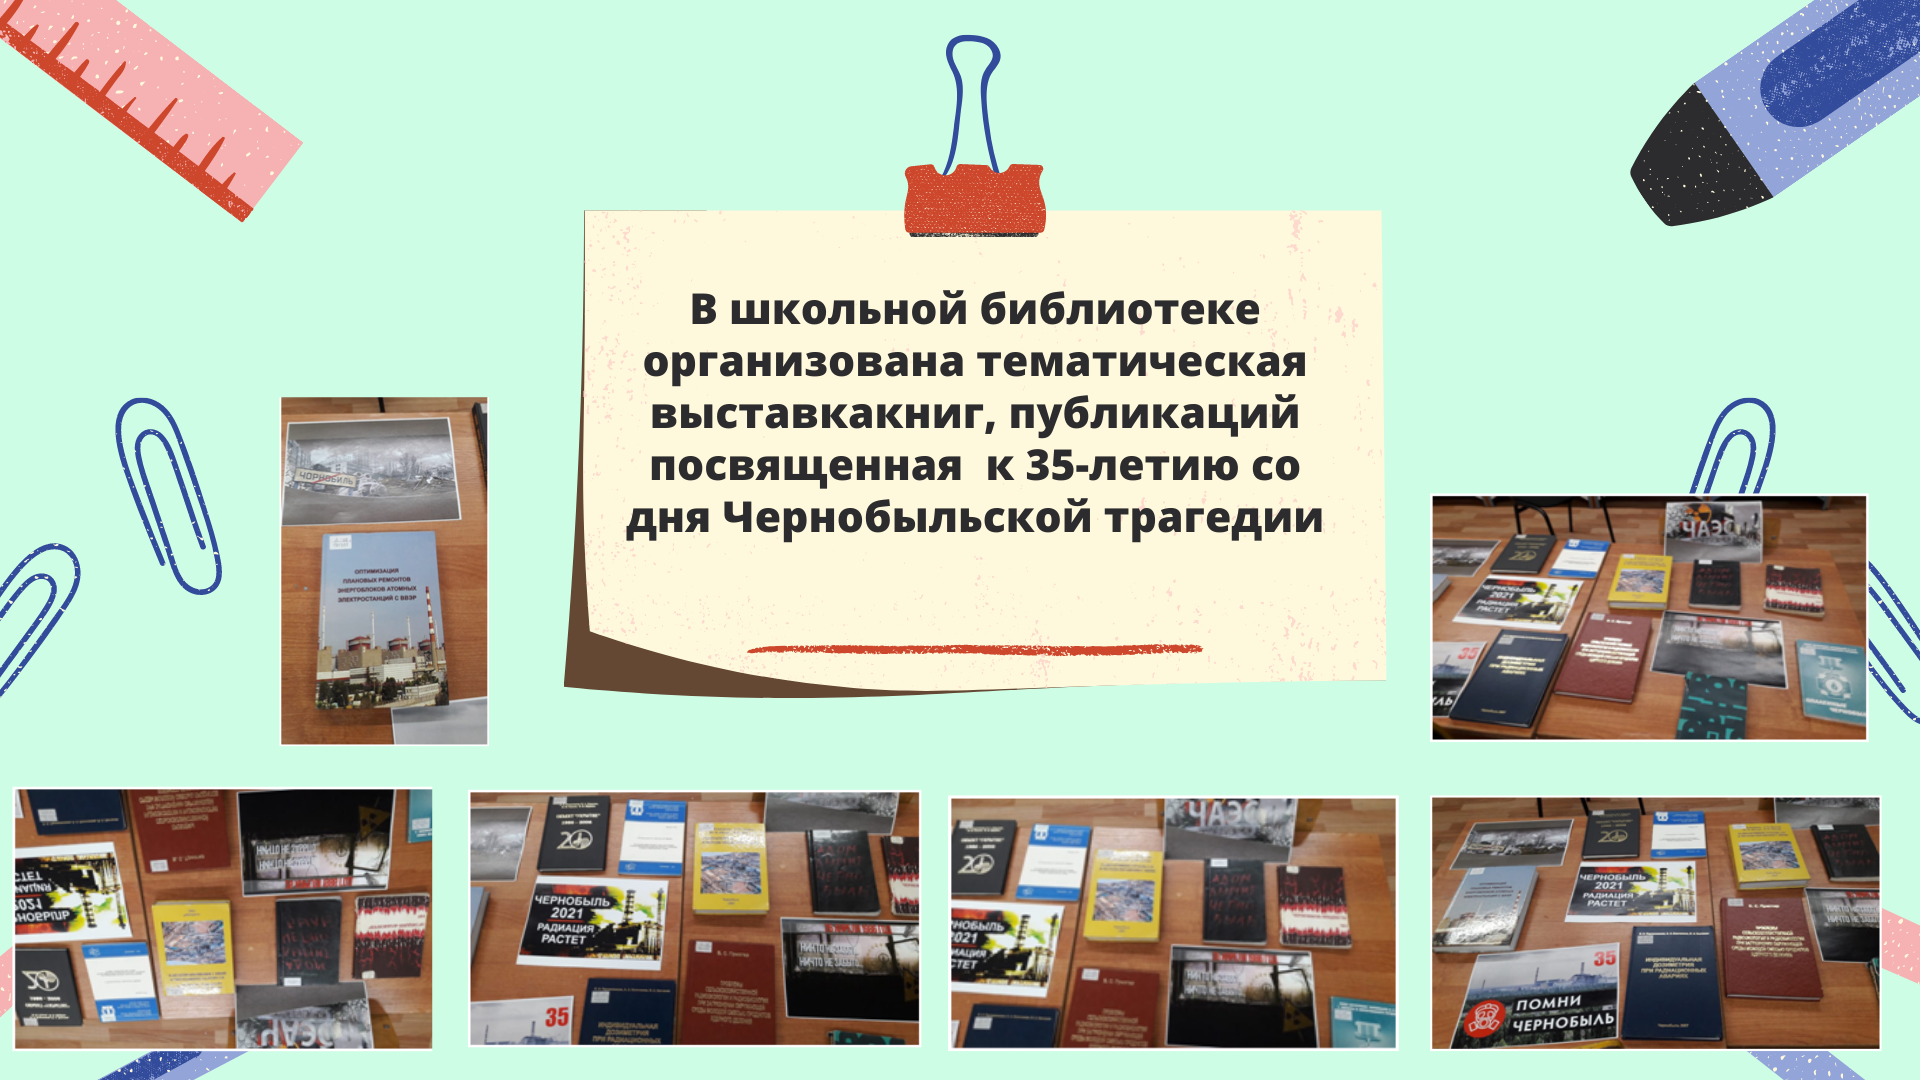 Выставка  книг, публикаций посвященная к 35-летию со дня Чернобыльской трагедии